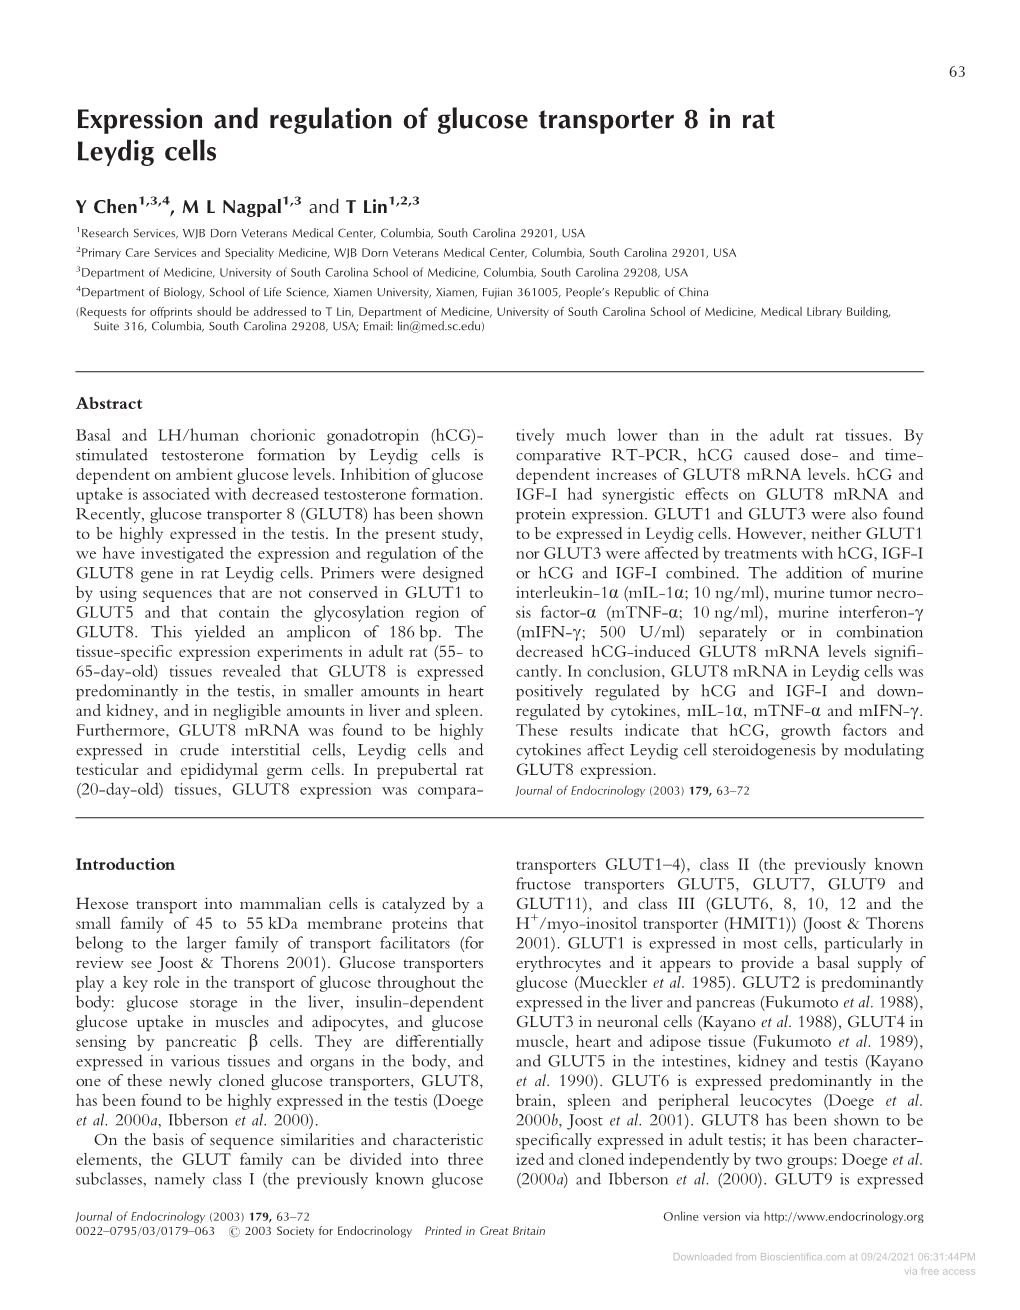 Expression and Regulation of Glucose Transporter 8 in Rat Leydig Cells